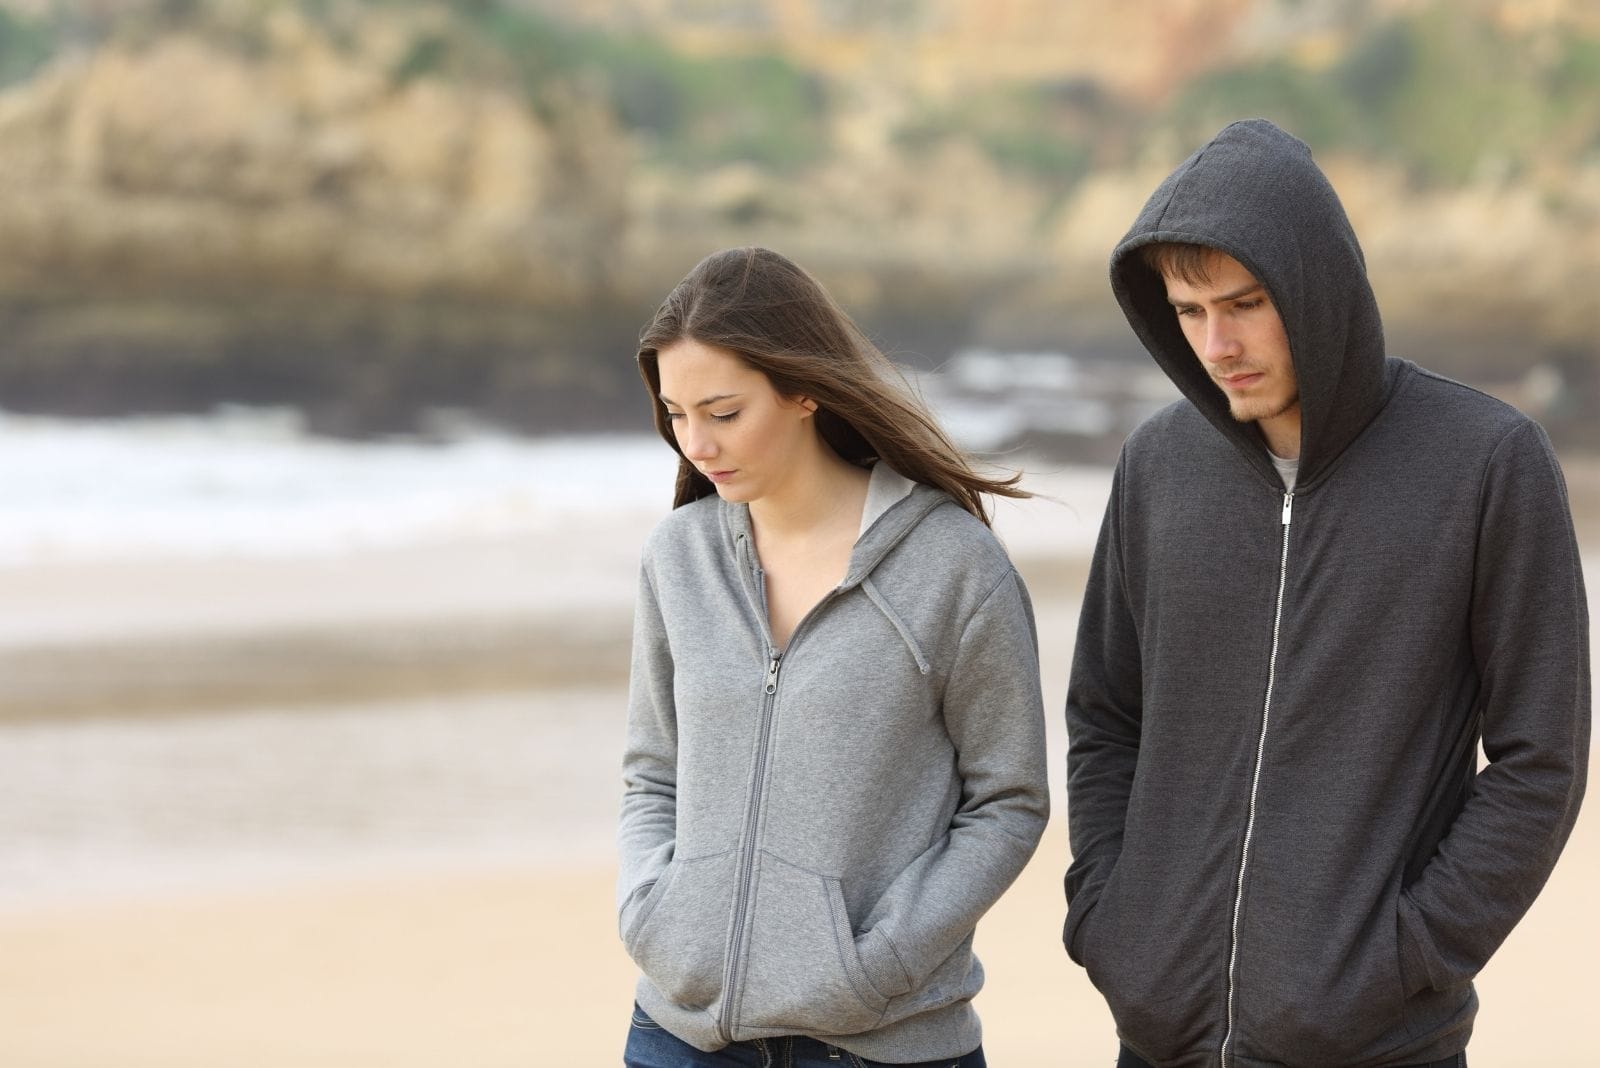 coppia triste che cammina sulla spiaggia parlando seriamente